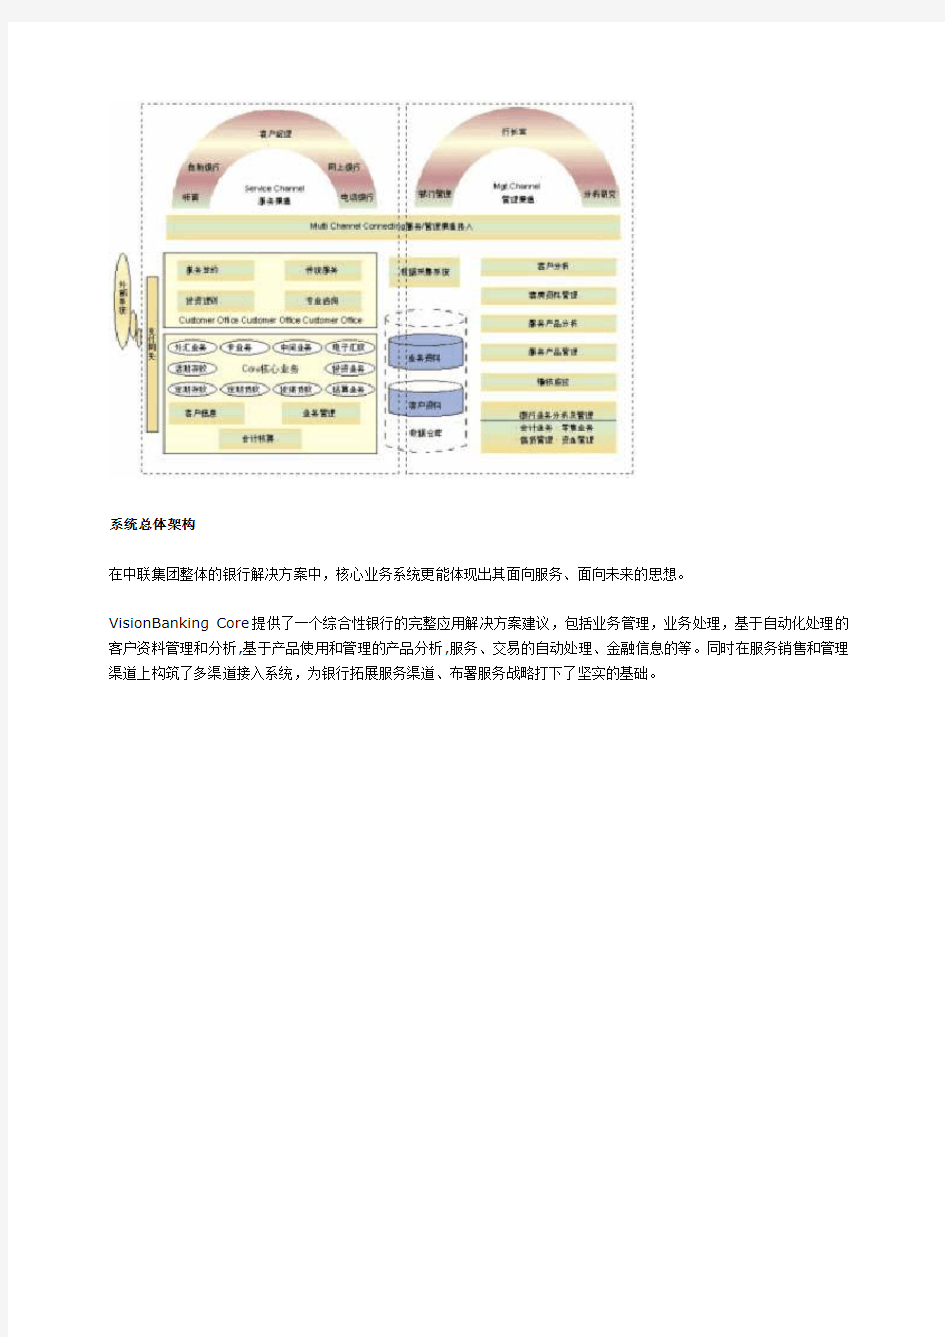 中联银行核心业务系统